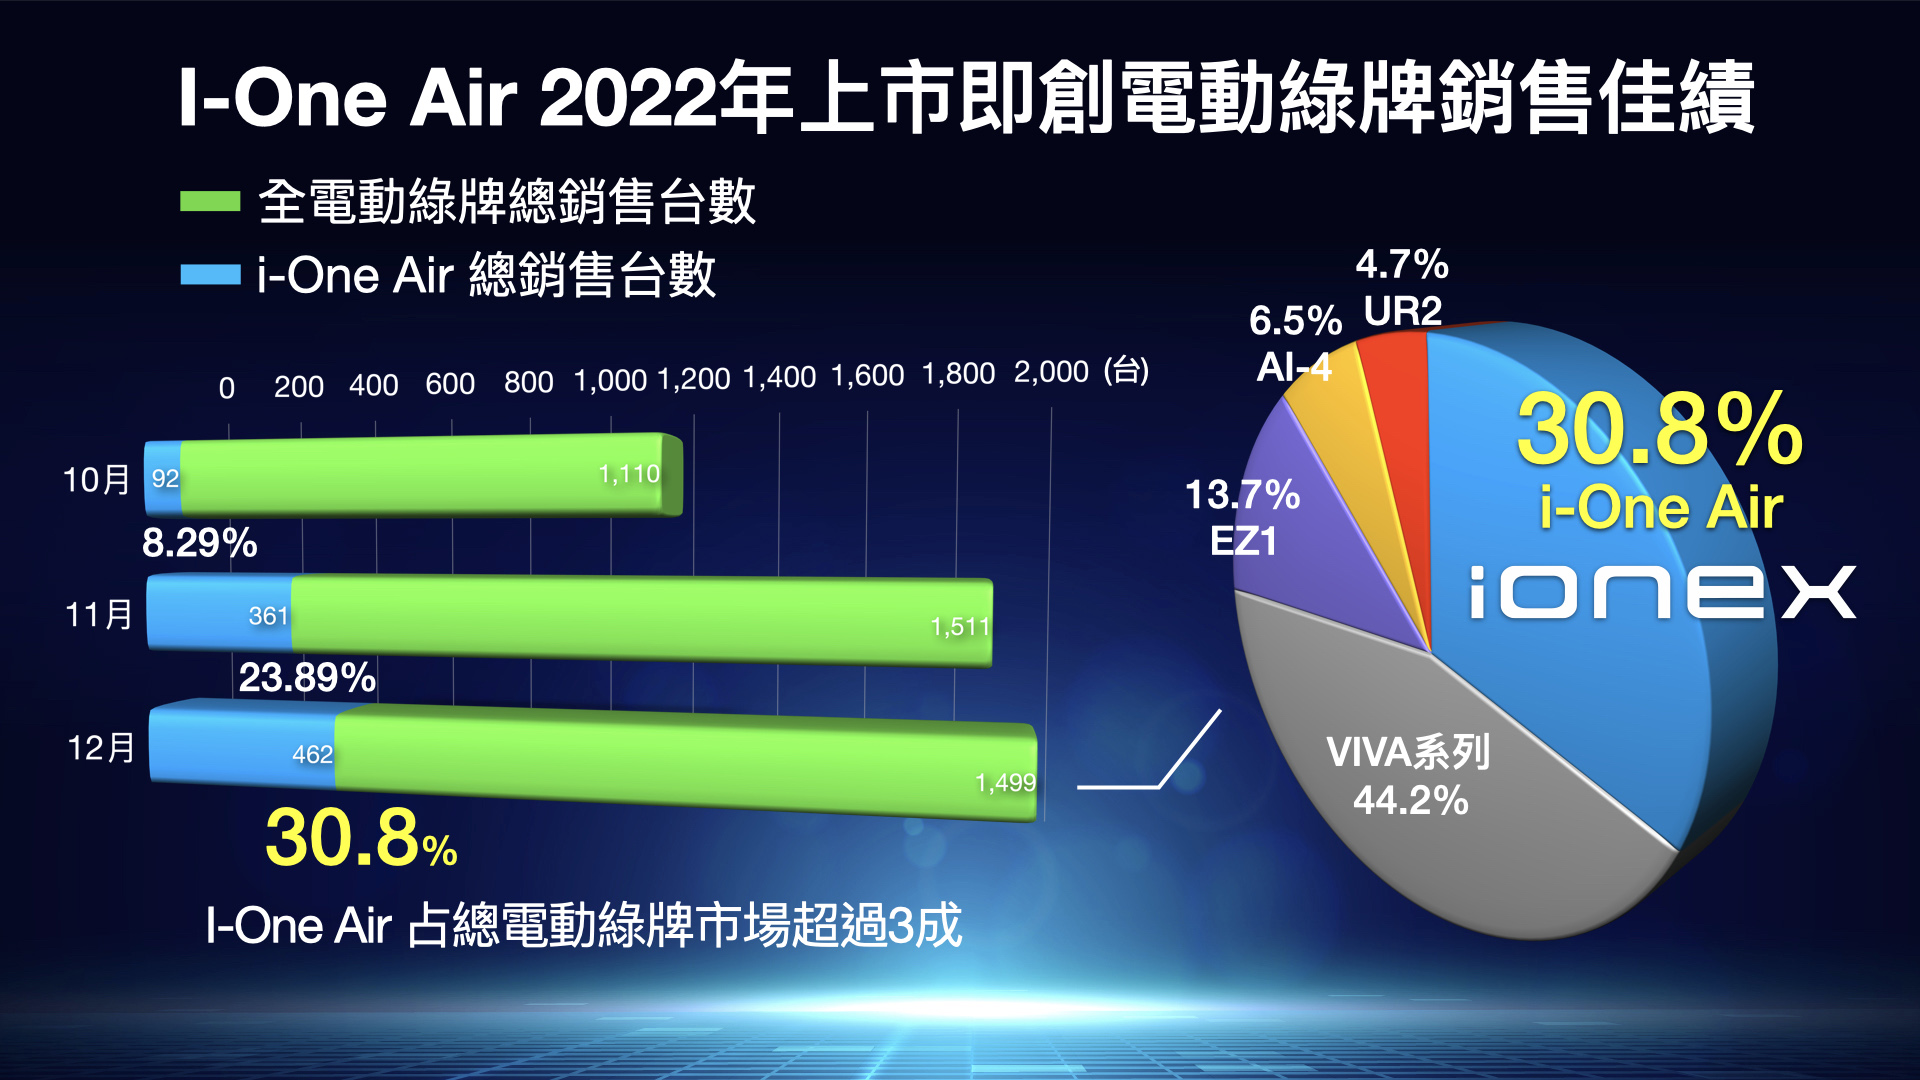 2022 年 10 月發表的 i-One Air 問世不久就立刻稱霸綠牌電動機車市場銷售。